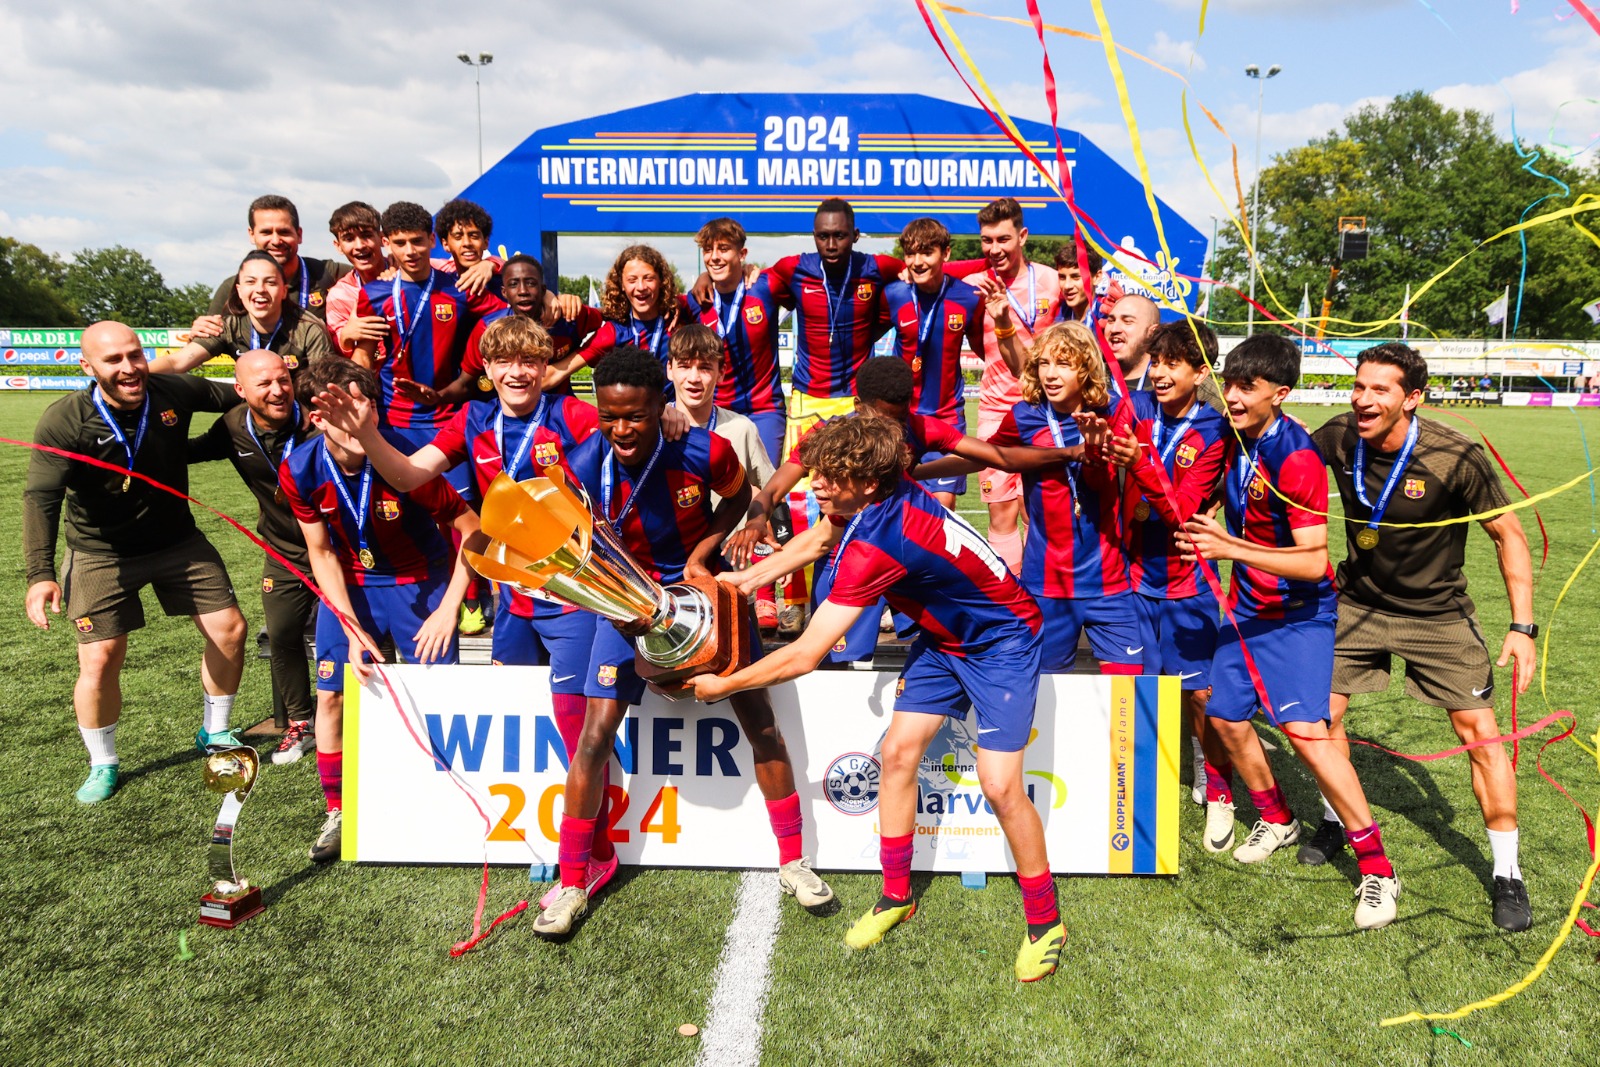 Marveld Tournament 2024 - Winner FC Barcelona